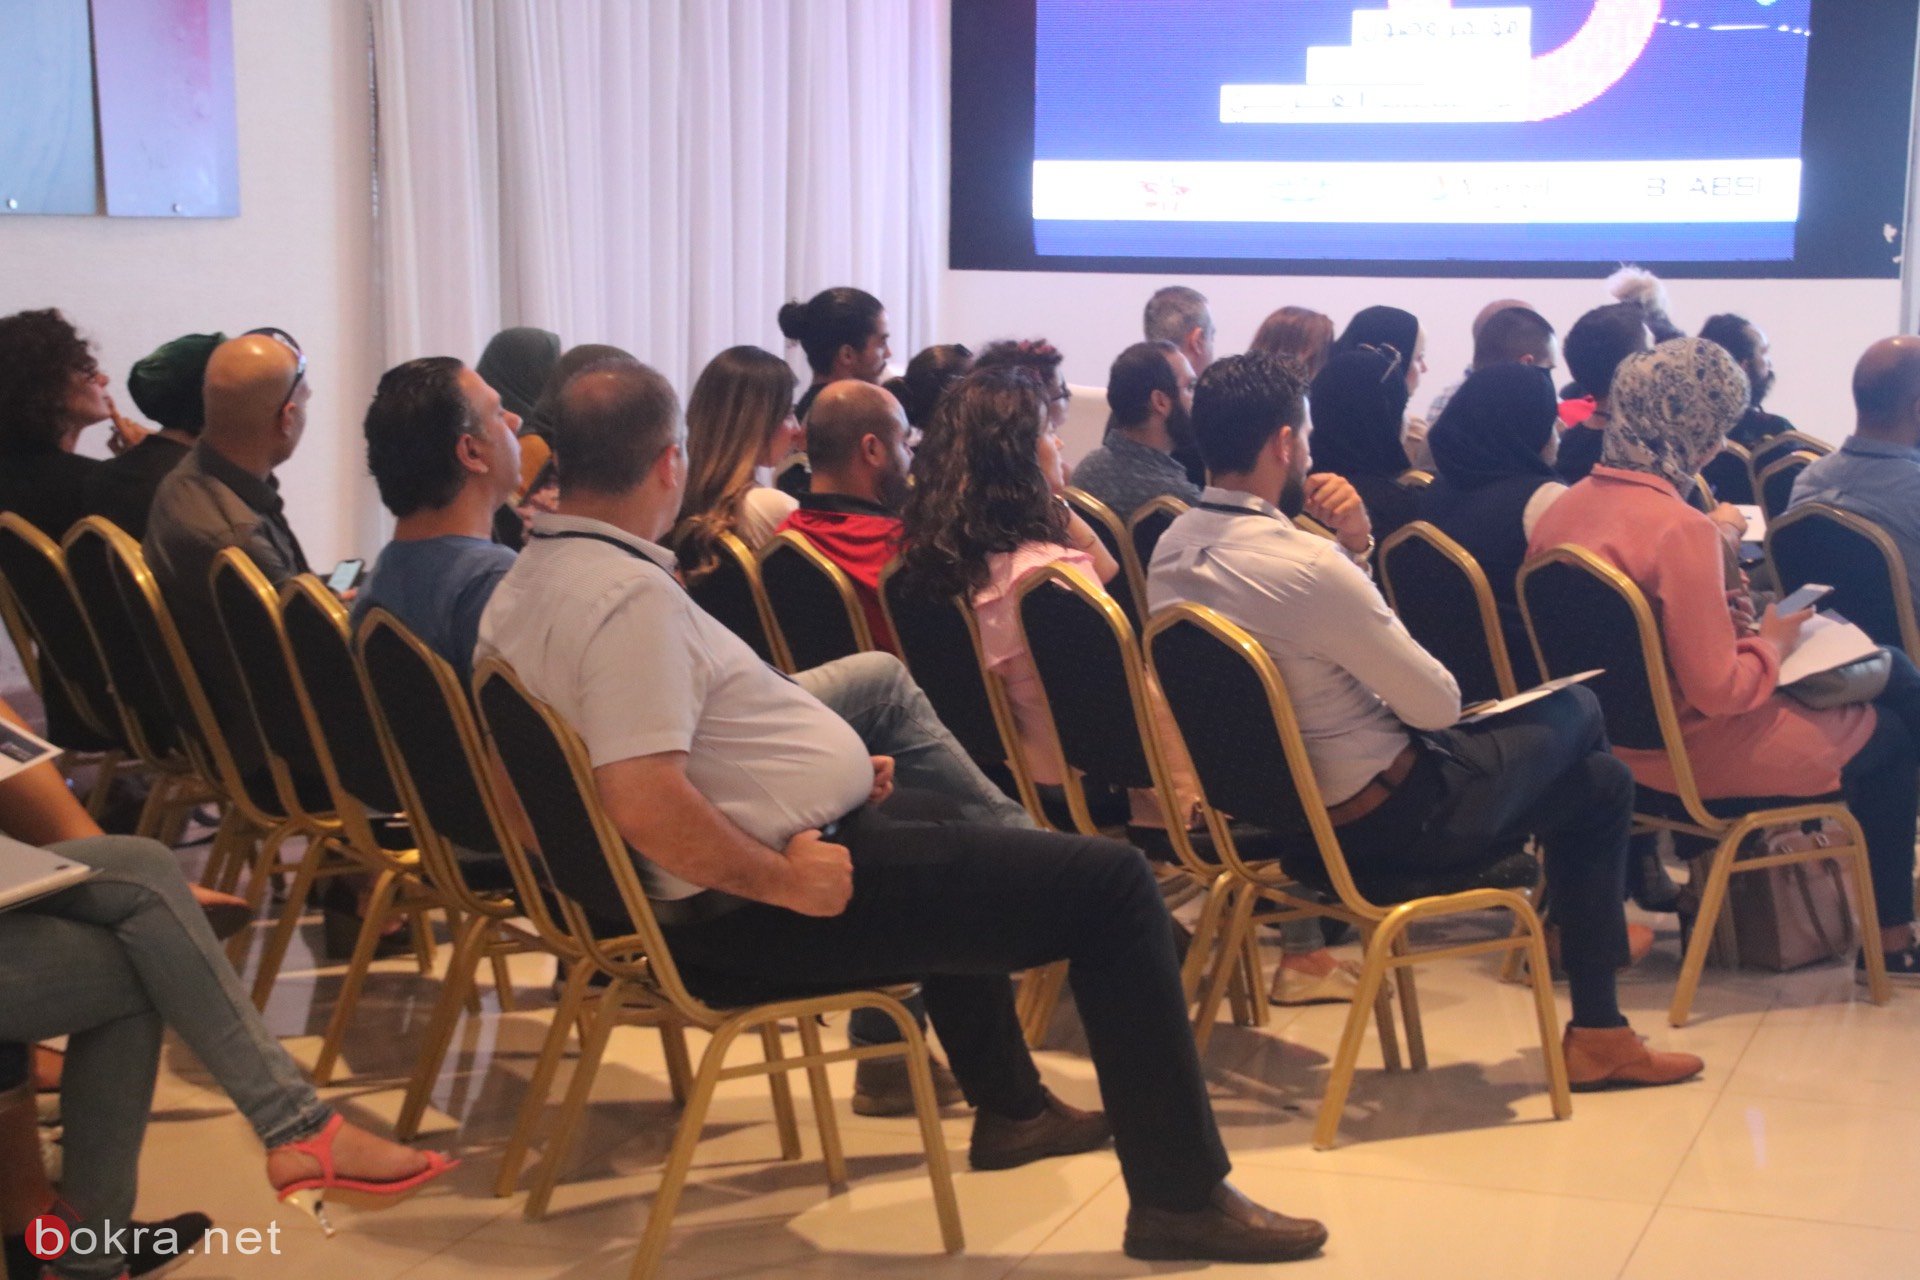 حيفا: مشاركة واسعة في مؤتمر "وصول" حول آخر التطورات في قنوات التسويق الرقمي-40